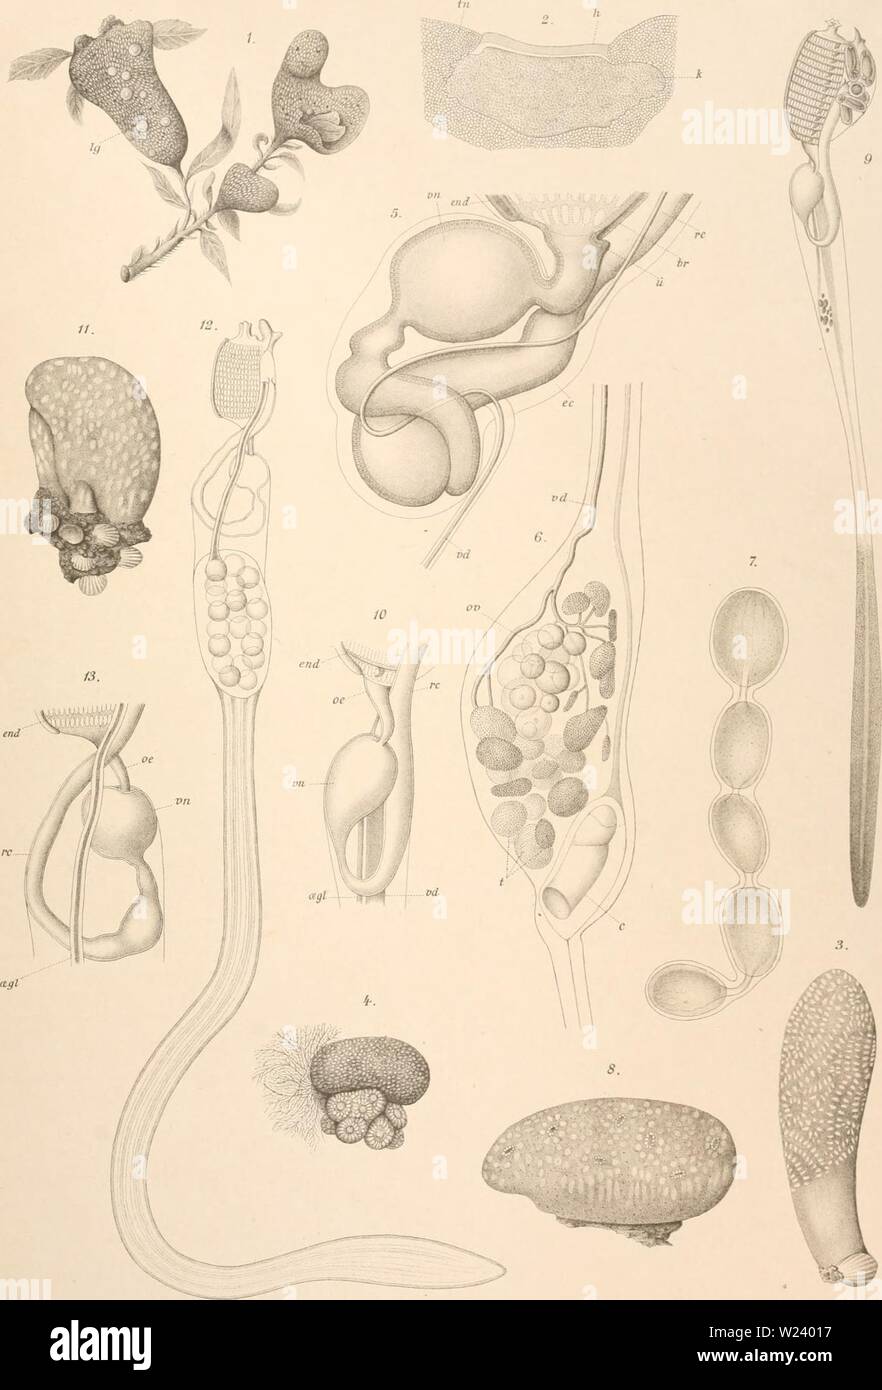 Archive image from page 192 of Den Norske Nordhavs-expedition, 1876-1878 (1880-1901). Den Norske Nordhavs-expedition, 1876-1878  dennorskenordhav07mohn Year: 1880-1901  uYo7'sk'e Xordliavs-Expeditioii. H.HuHfeldt-Kaas Sijnascidiae. Tnh.I.    O.Bergh, del. Lith.Anst. Julius Klinkhardt.Leipzig. 1-2 Didemnoides variahile J. Distaplia clavata f-Z Glossophorum sahidosum. 8-W Aplidiopsis pomum 11-13 Aplidiopsis sarsii. Stock Photo